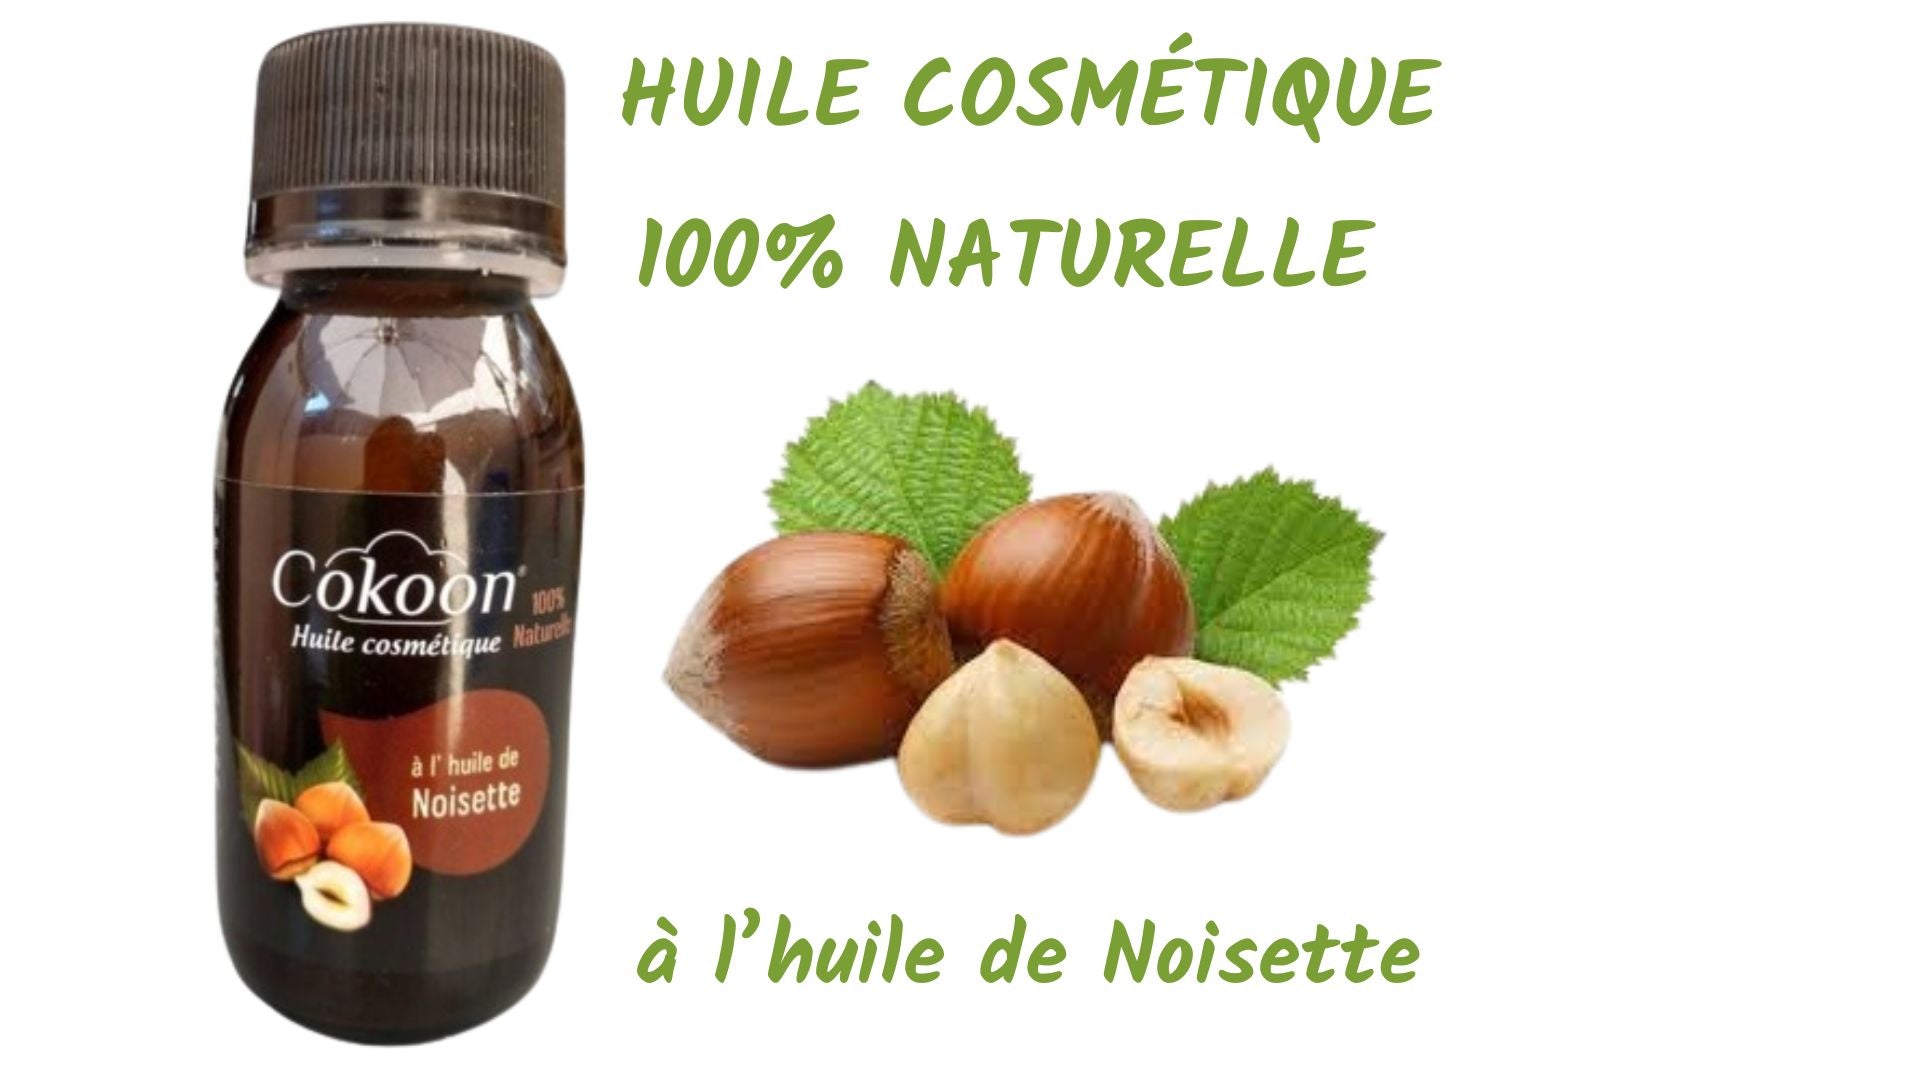 Huile cosmétique de Noisette - 60 ml - Bienfaits hydratation anti-age Visage Corps et Cheveux